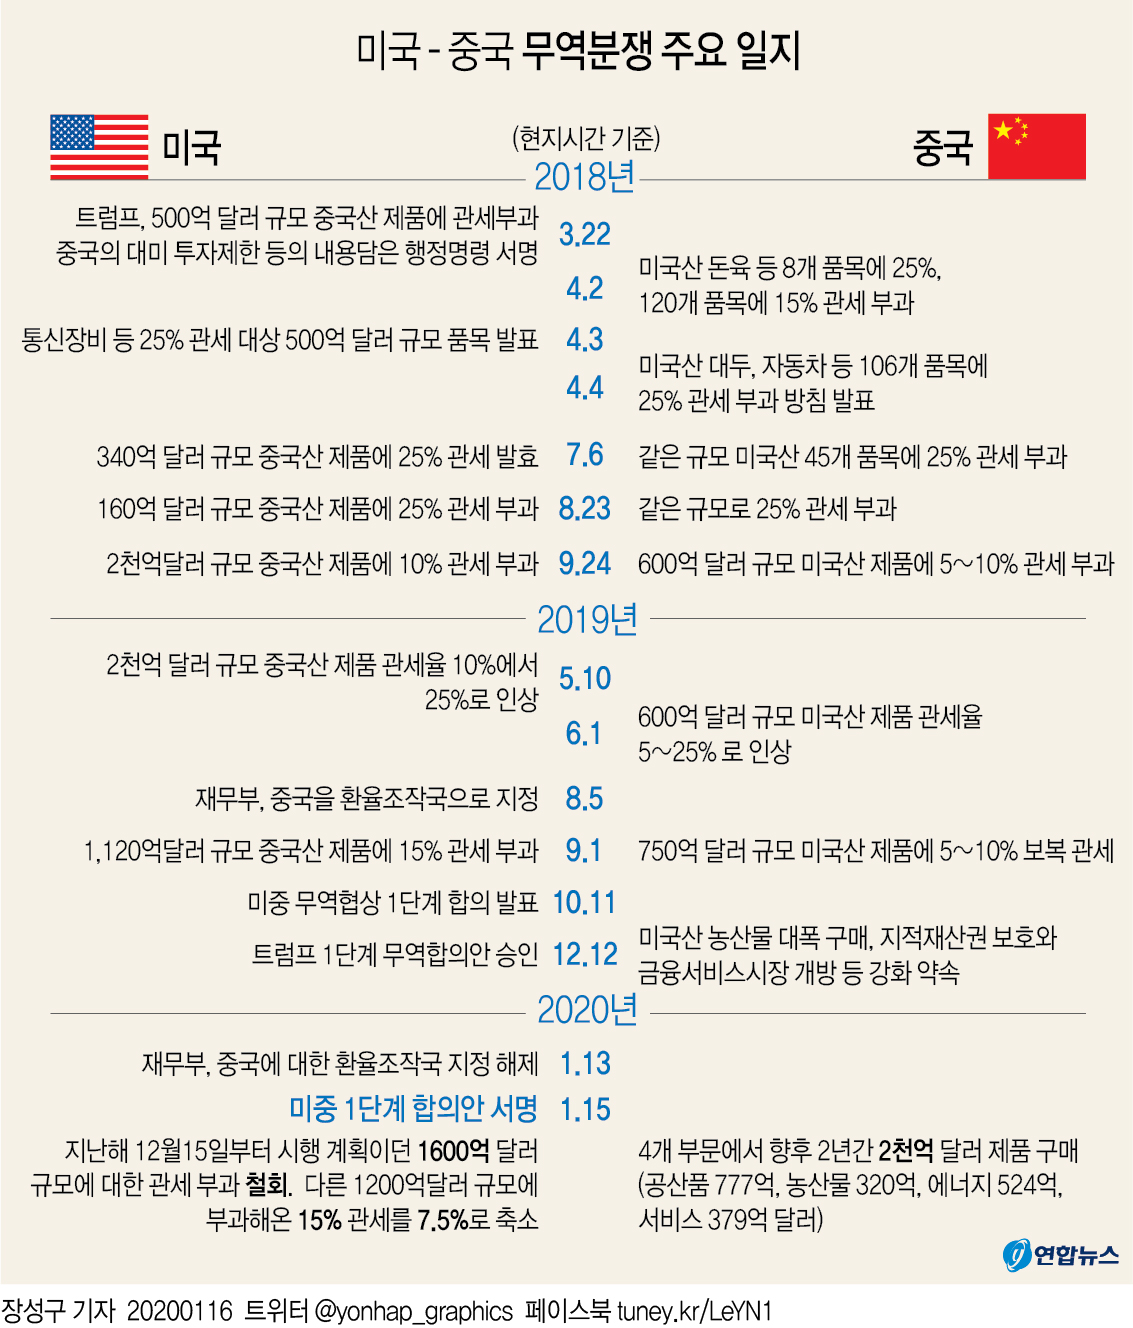 [그래픽] 미국 - 중국 무역분쟁 주요 일지(종합)